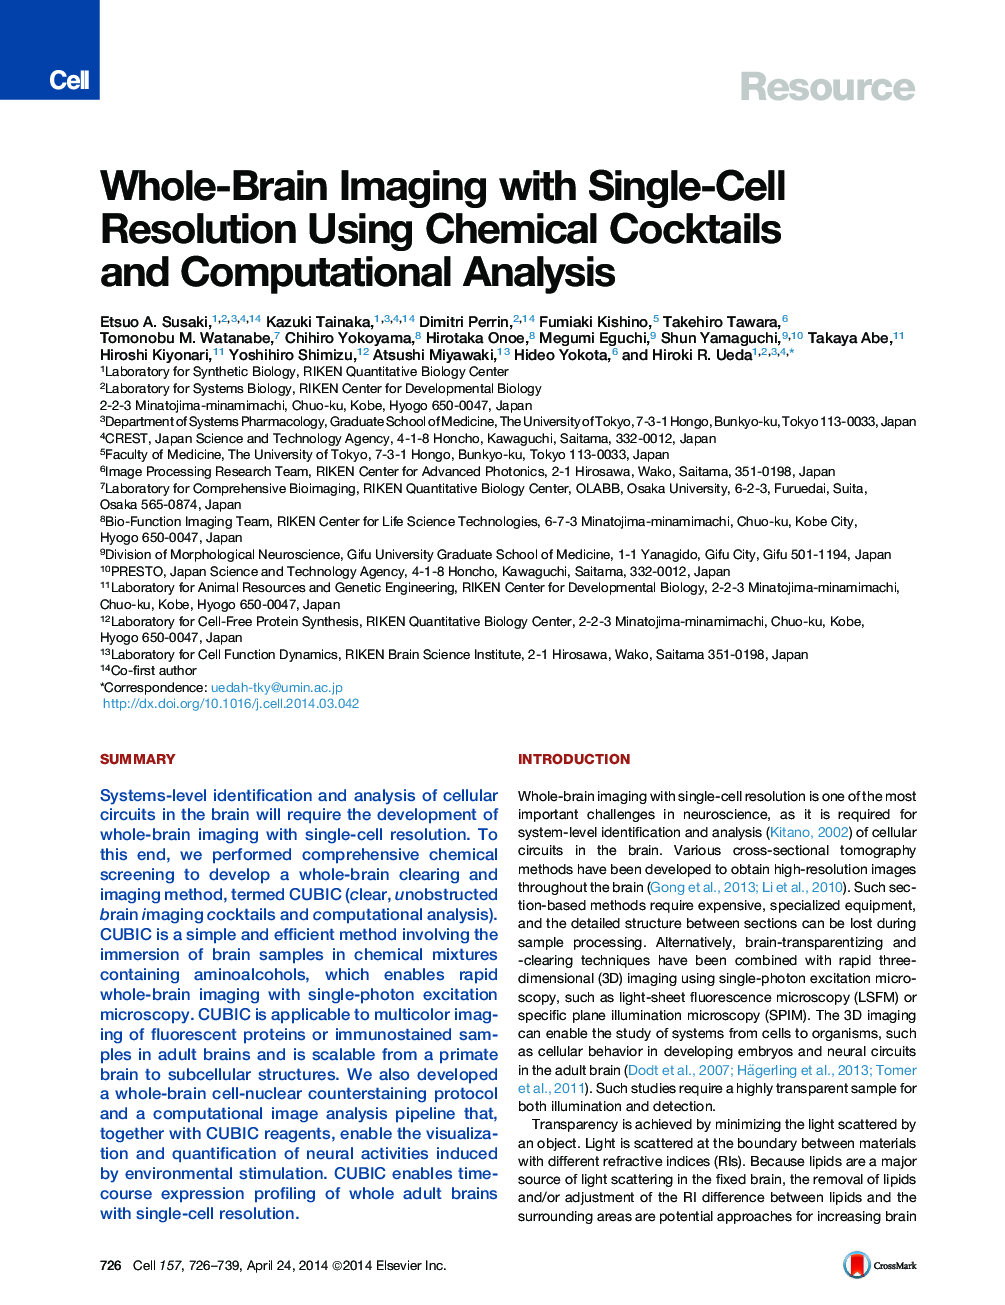 تصویربرداری کامل مغز با تفکیک تک سلولی با استفاده از کوکتلهای شیمیایی و تحلیل محاسباتی 